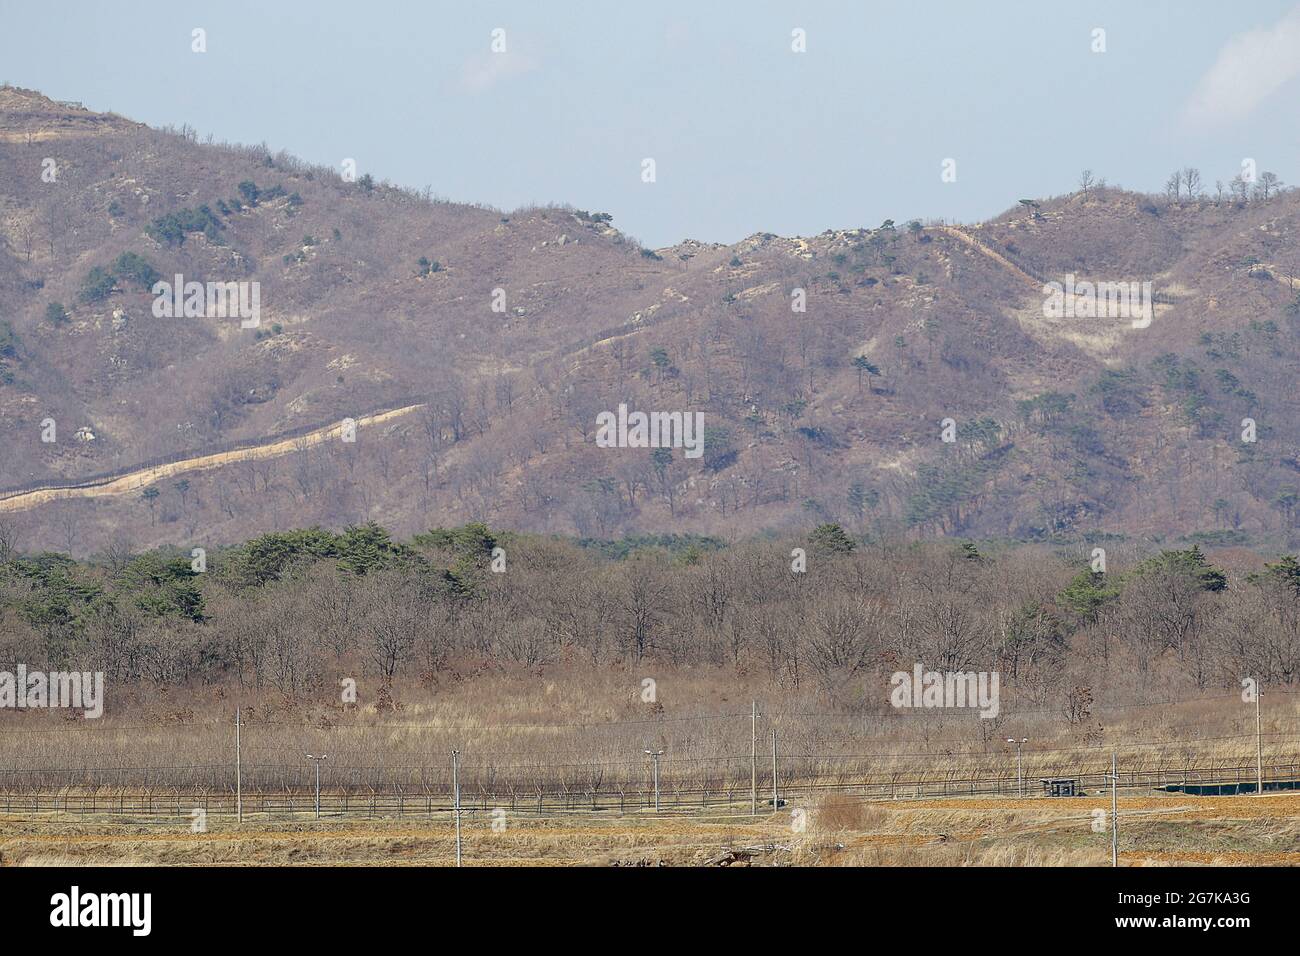 11 de abril de 2018-Goyang, Corea del Sur-Una visión de la batalla de la guerra de Corea del caballo blanco y la Línea de Control Civil en Cheorwon, Corea del Sur. La batalla del caballo blanco fue otra en una serie de sangrientas batallas por posiciones dominantes en la cima de la colina durante la guerra de Corea. Baengma-goji era una colina de 395 metros (1.296 pies) en el Triángulo del Hierro, formada por Pyonggang en su pico y Gimhwa-eup y Cheorwon en su base, era una ruta estratégica de transporte en la región central de la península de Corea. White Horse fue la cresta de una masa boscosa en una colina que se extendió en dirección noroeste-sureste por aproximadamente dos millas Foto de stock